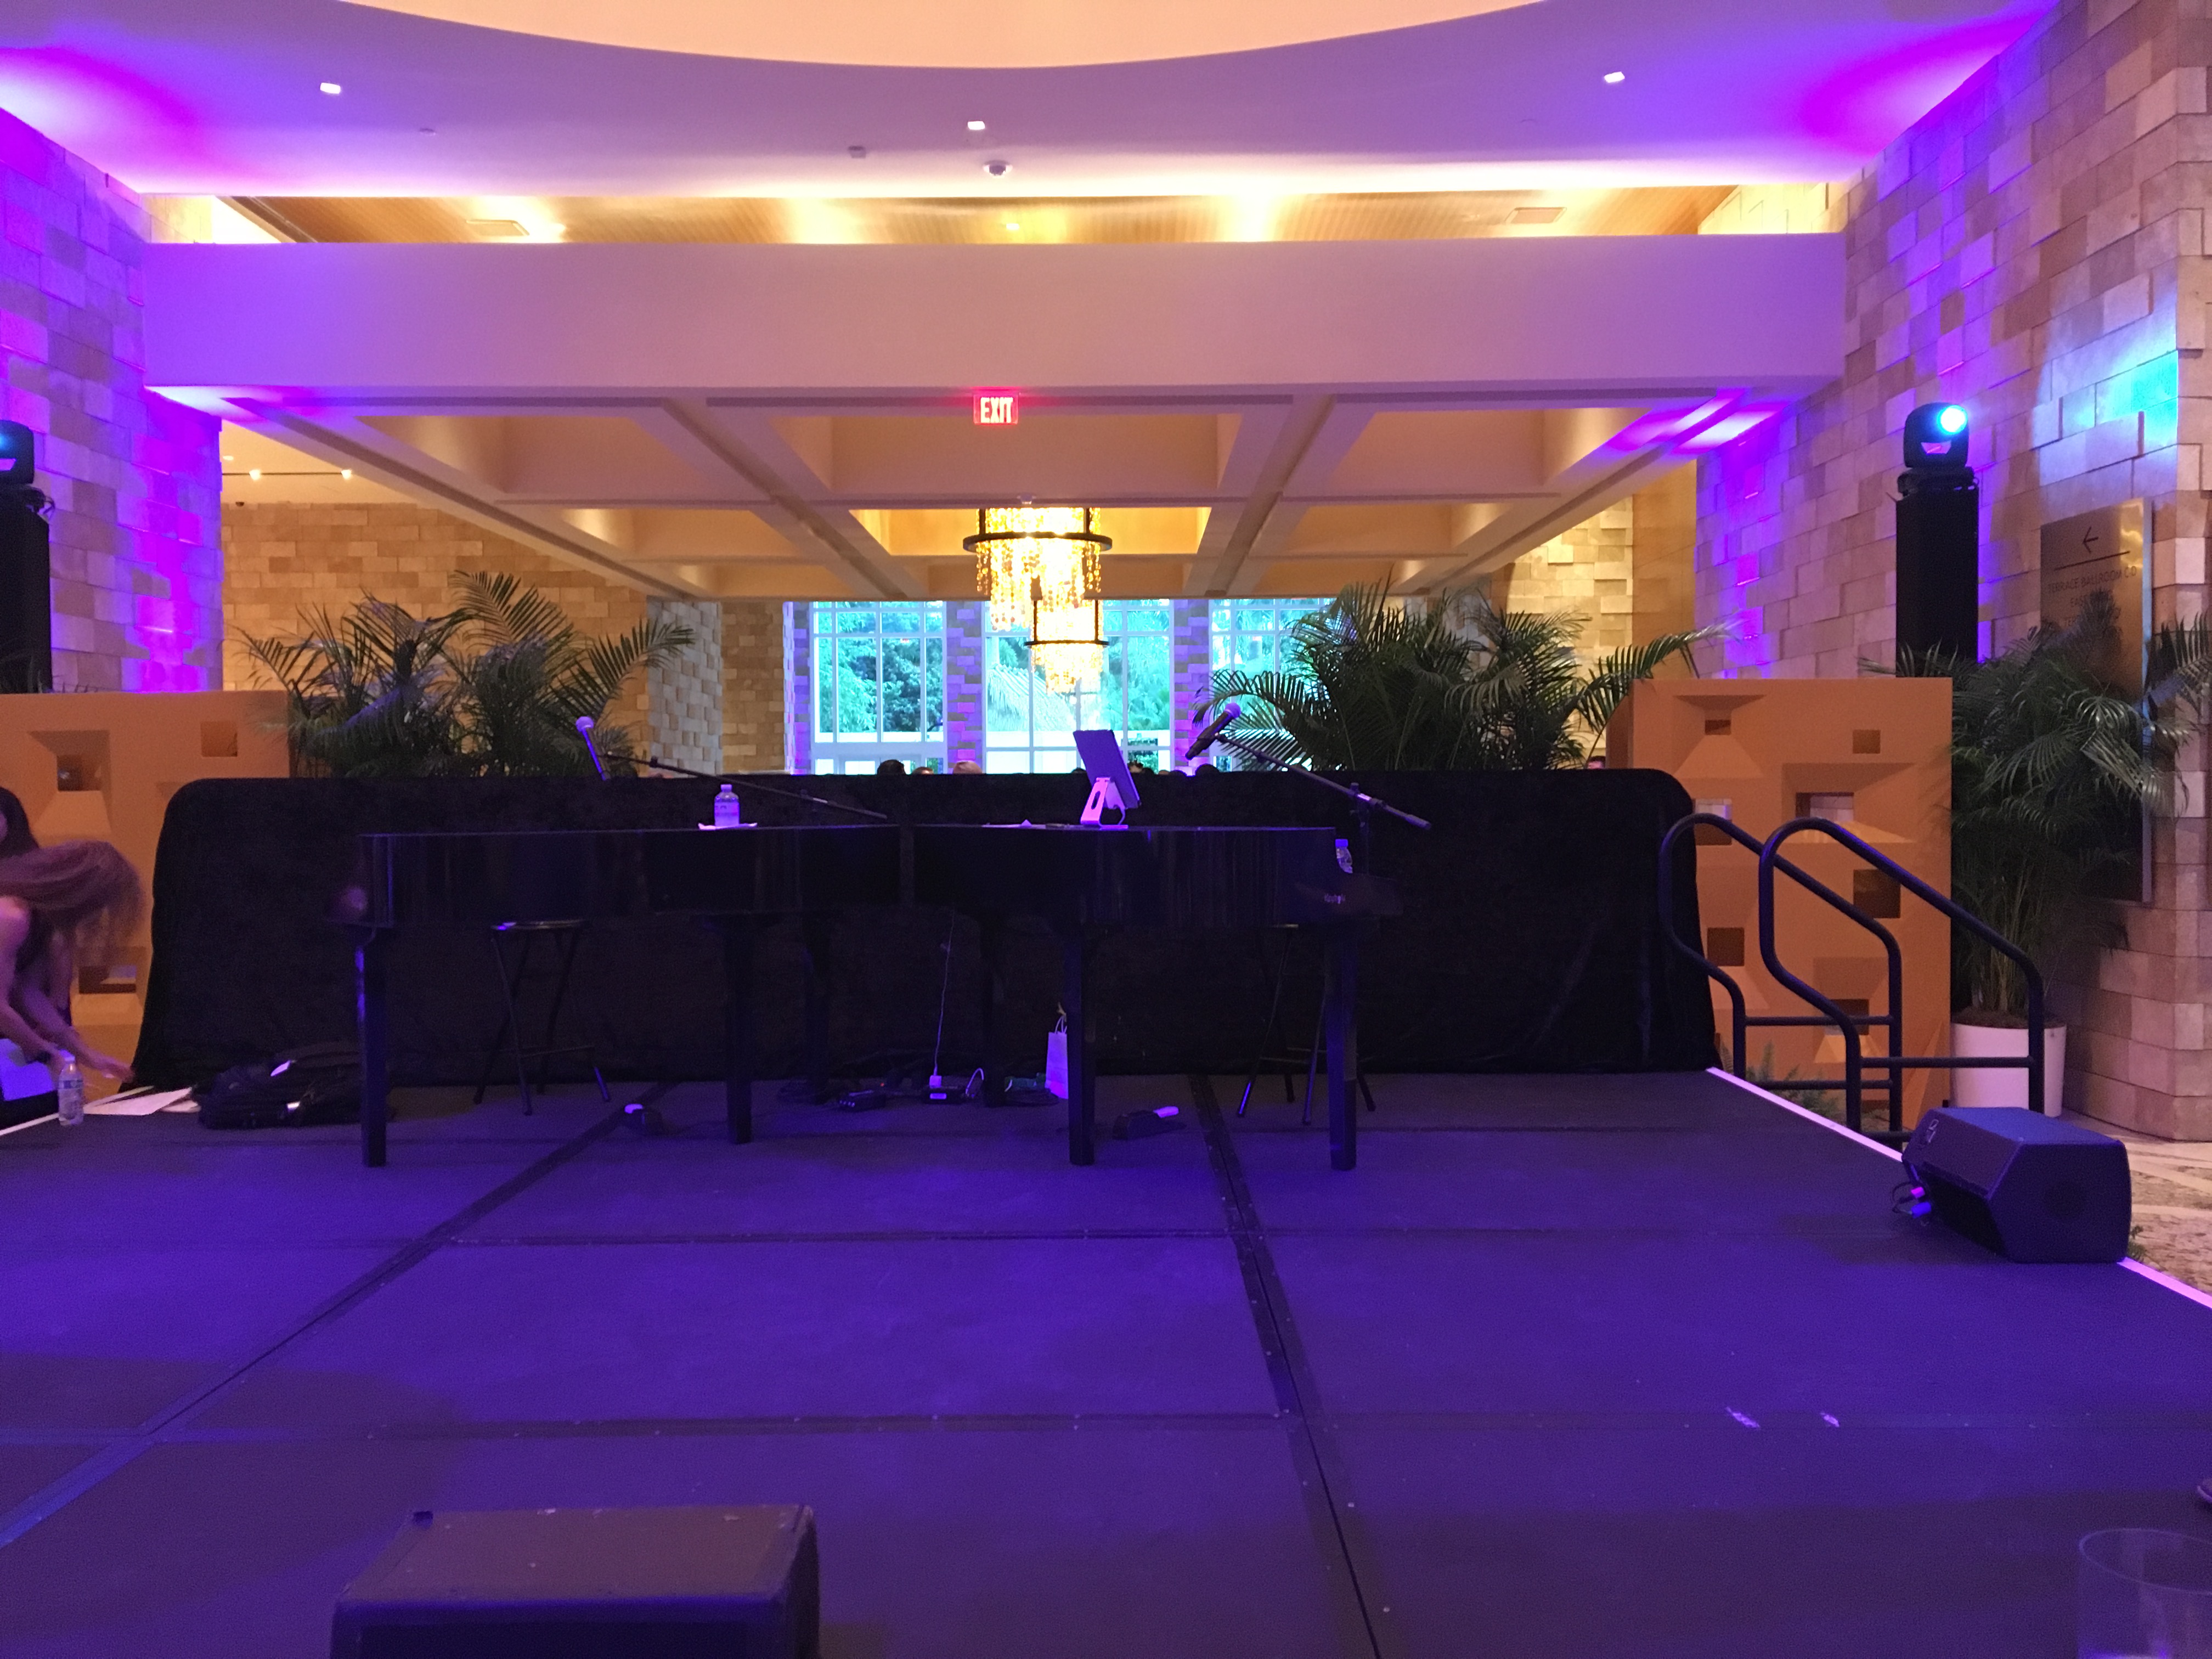 Seminole Hard Rock Hotel Corporate Event